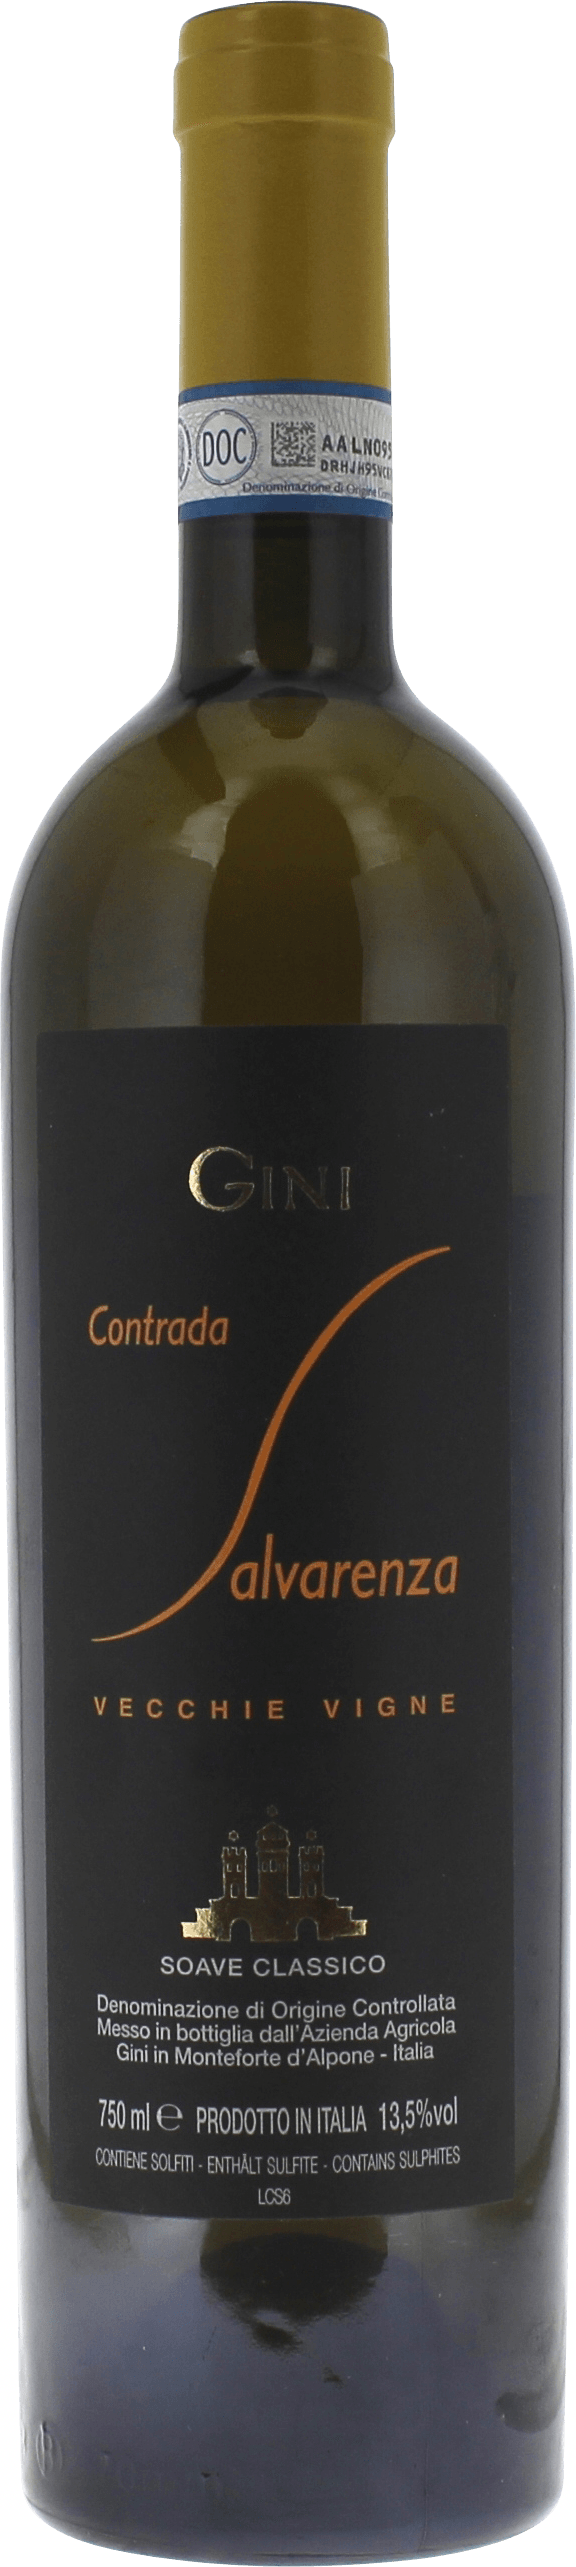 Gini - contrada salvarenza garganega - soave classico 2014  Italie, Vin italien